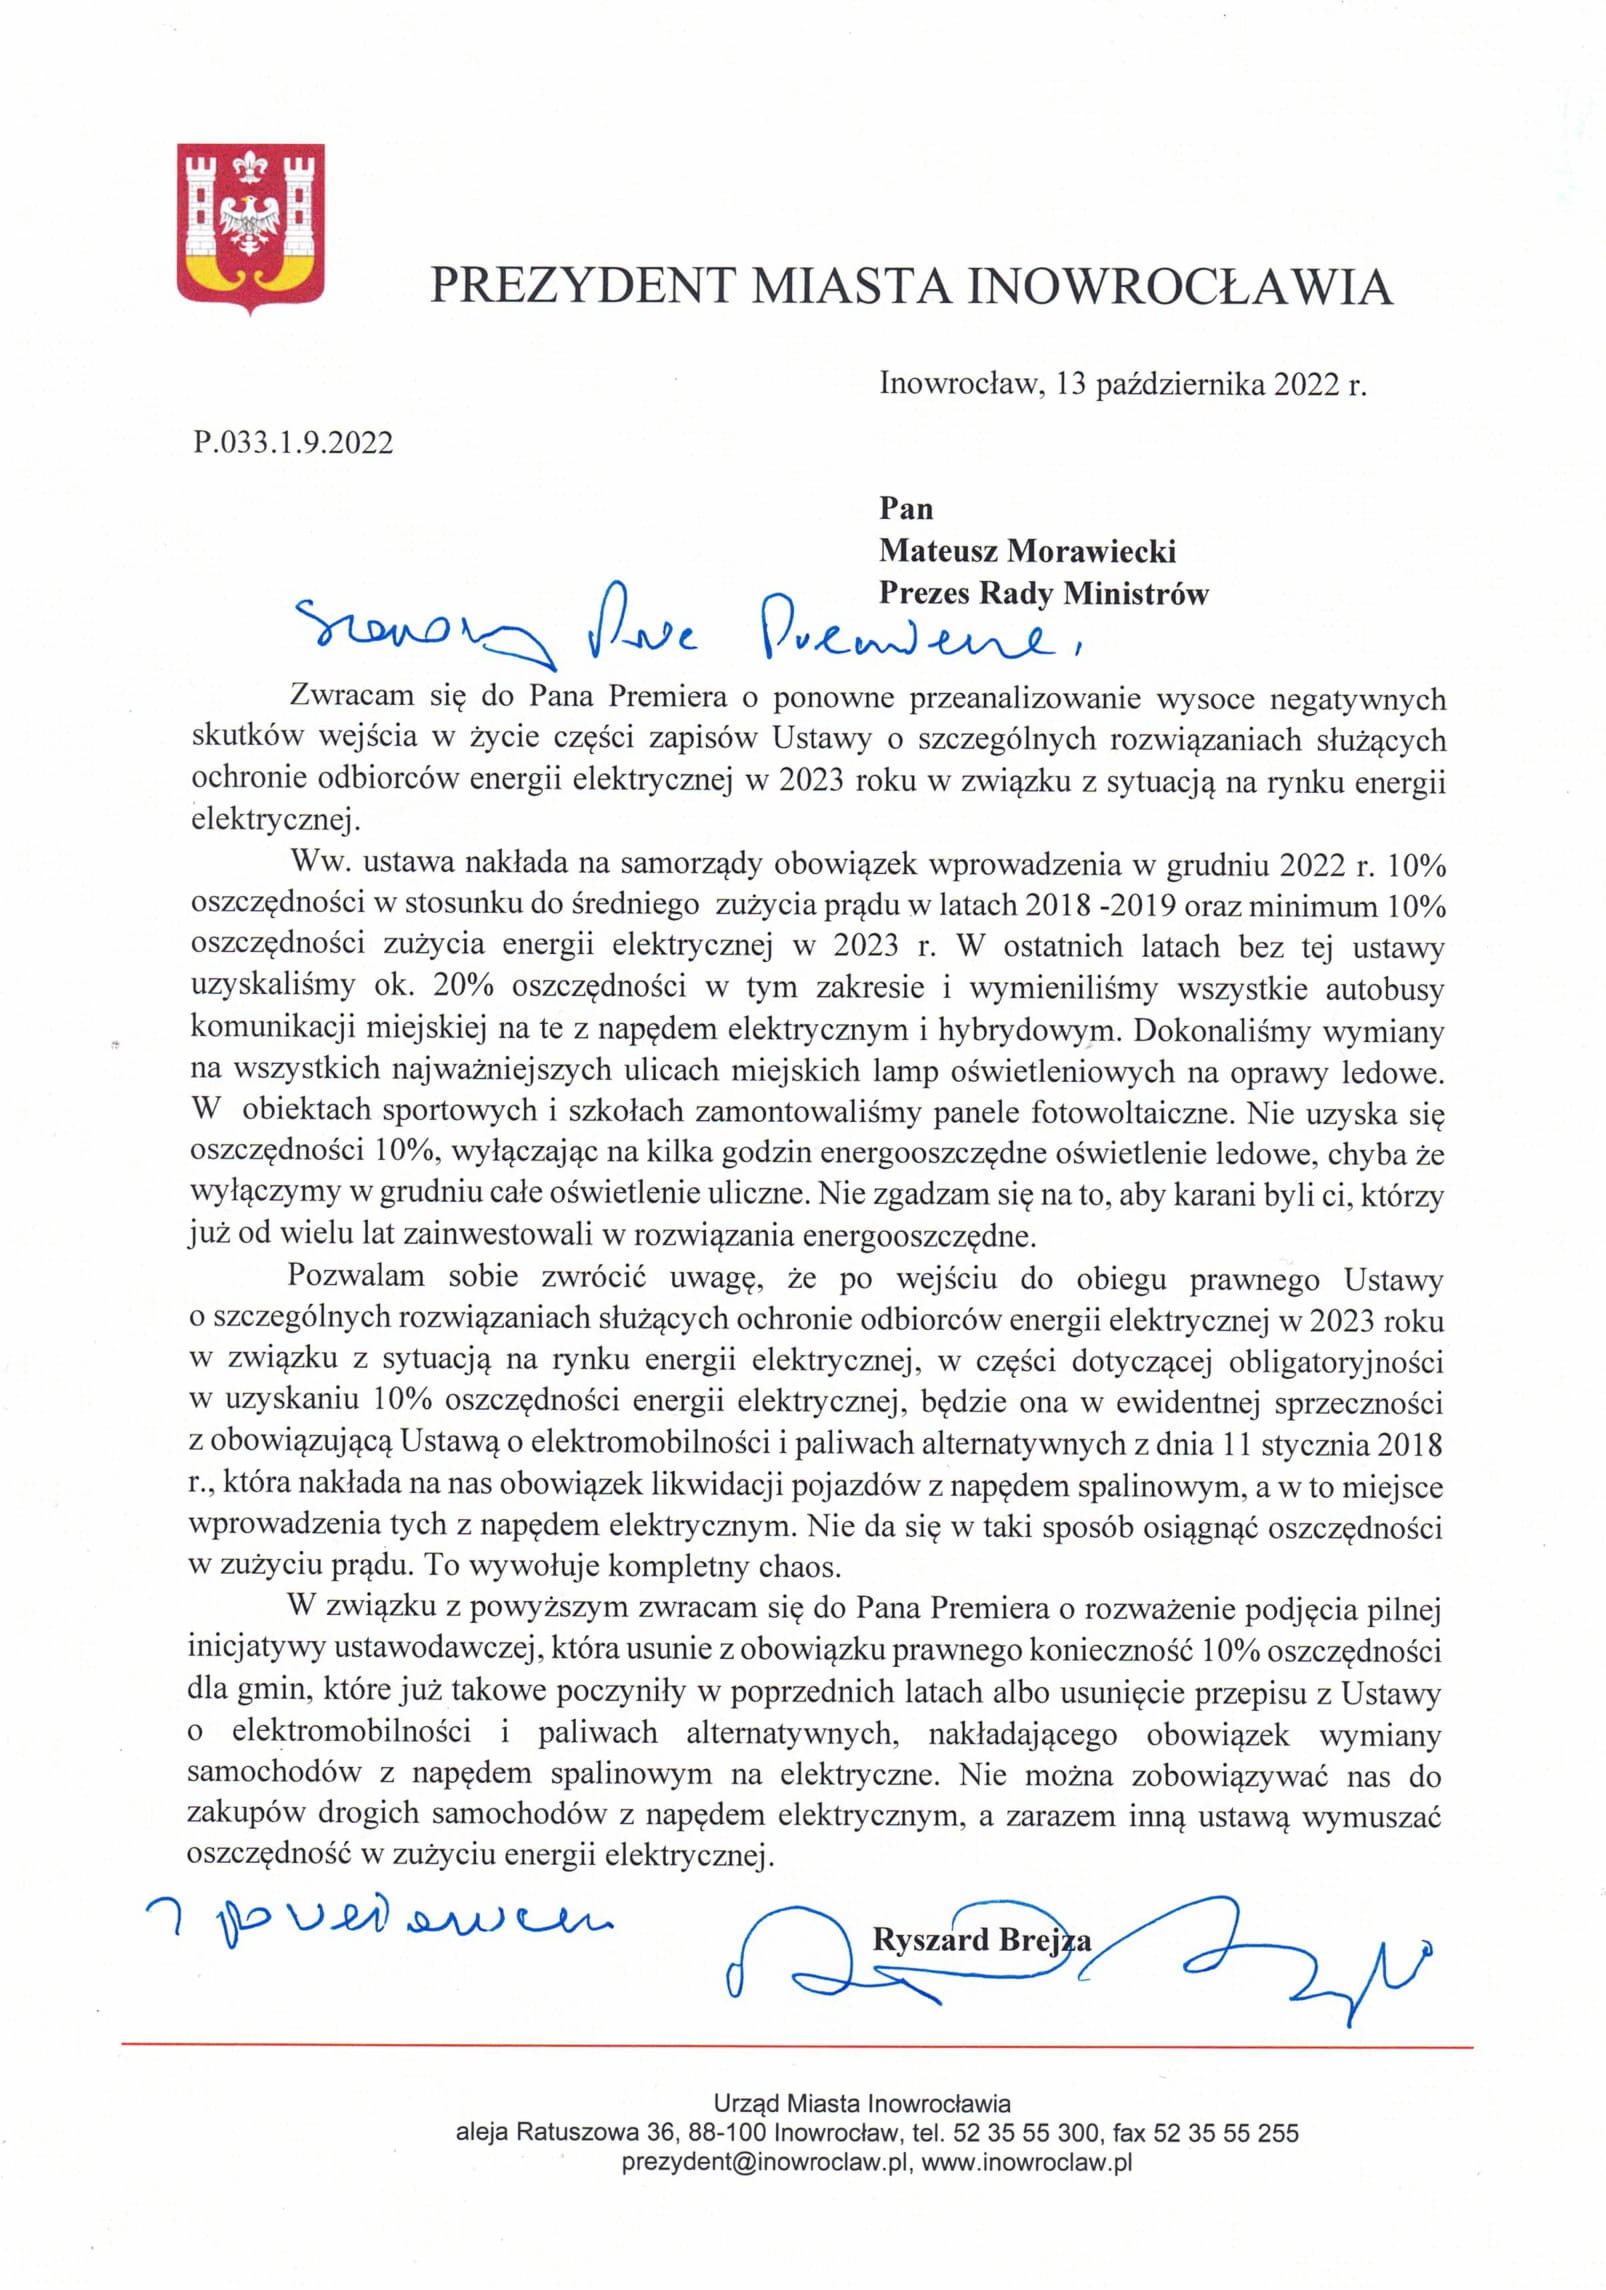 pismo prezydenta Ryszarda Brejzy, skierowane do premiera Mateusza Morawieckiego ws. oszczędności energii przez samorządy.